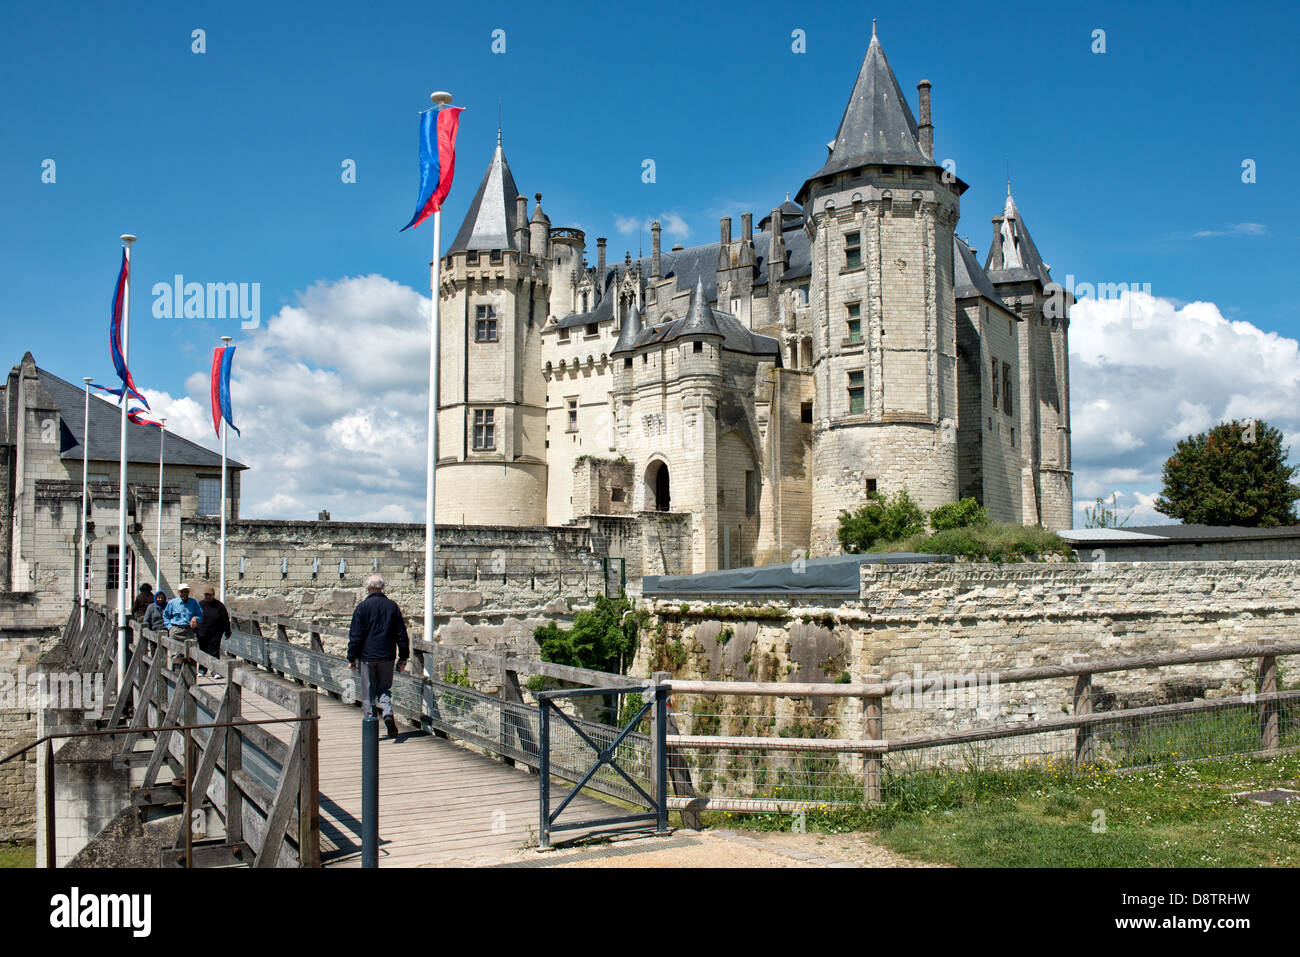 Ein Blick auf die historische Château de Saumur im Loire-Tal, Frankreich. Touristen, die Überquerung der Brücke in die Burg zeigen Stockfoto